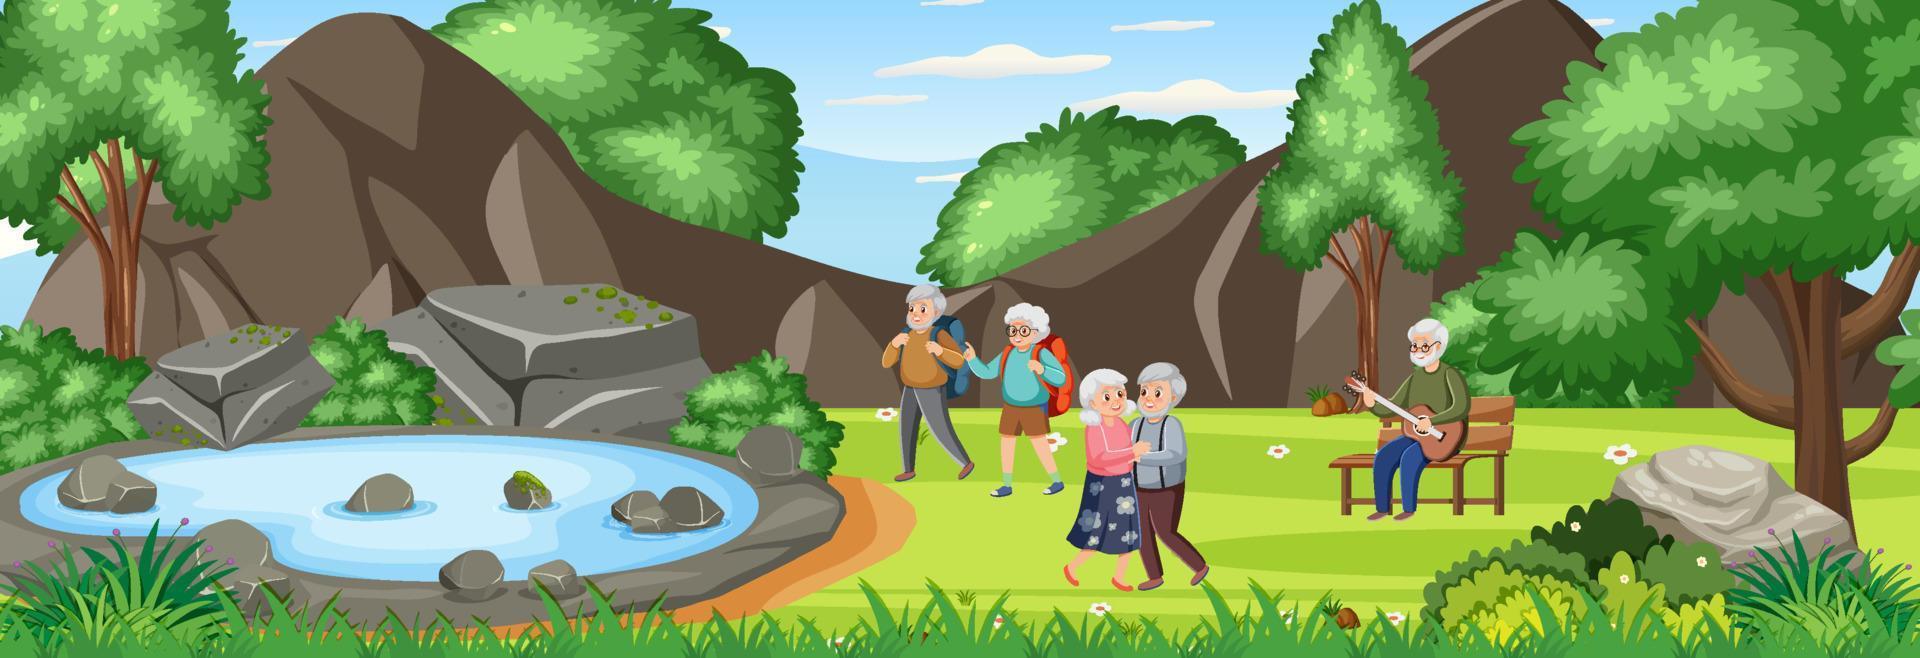 idosos fazendo atividade no parque natural vetor